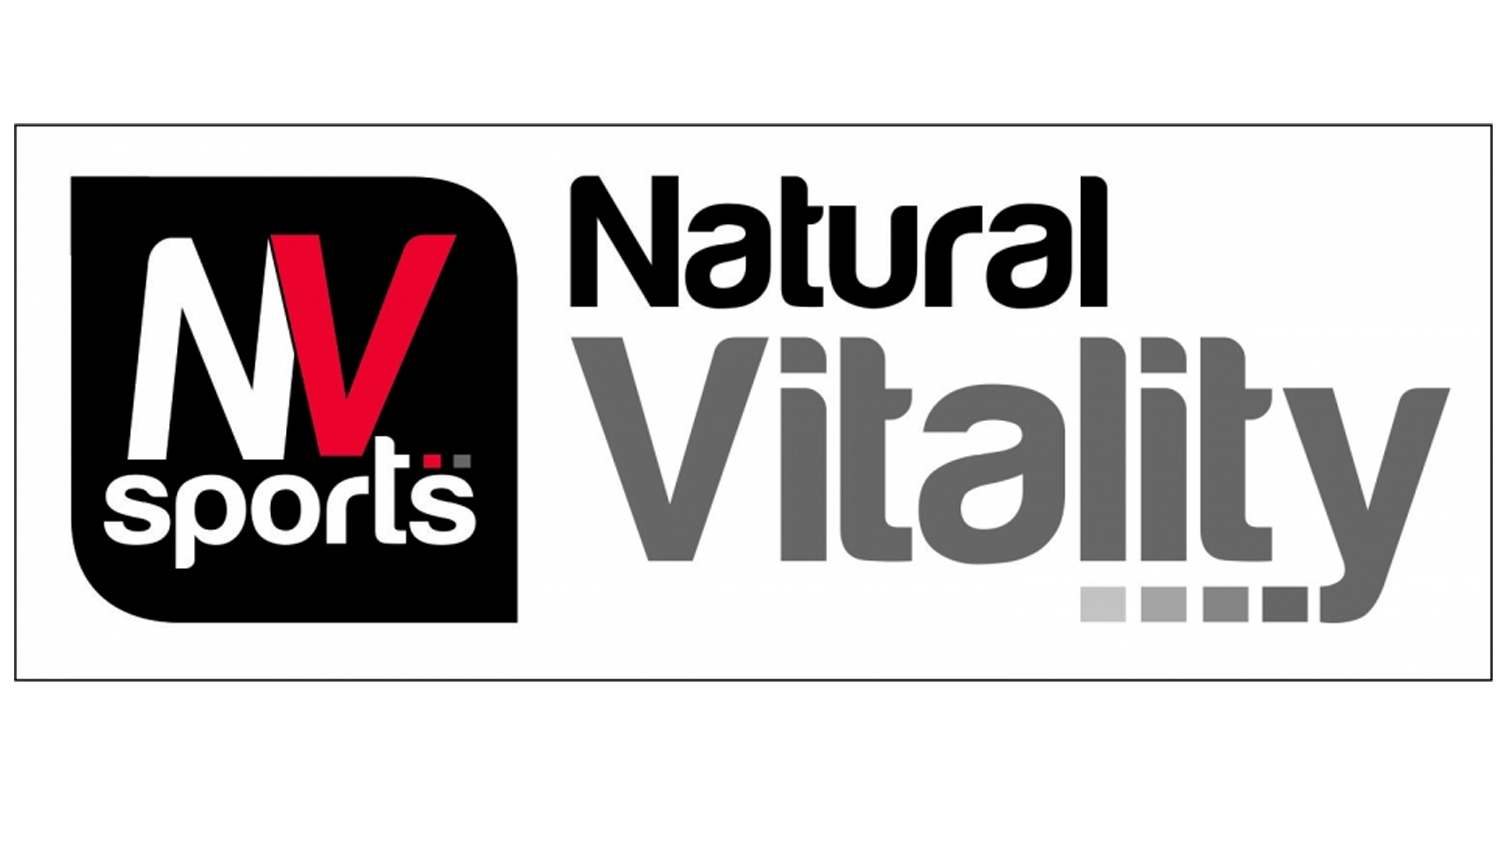 Natural Vitality nuevo patrocinador del 42 Campeonato Sudamericano de Fisico Culturismo y Fitness